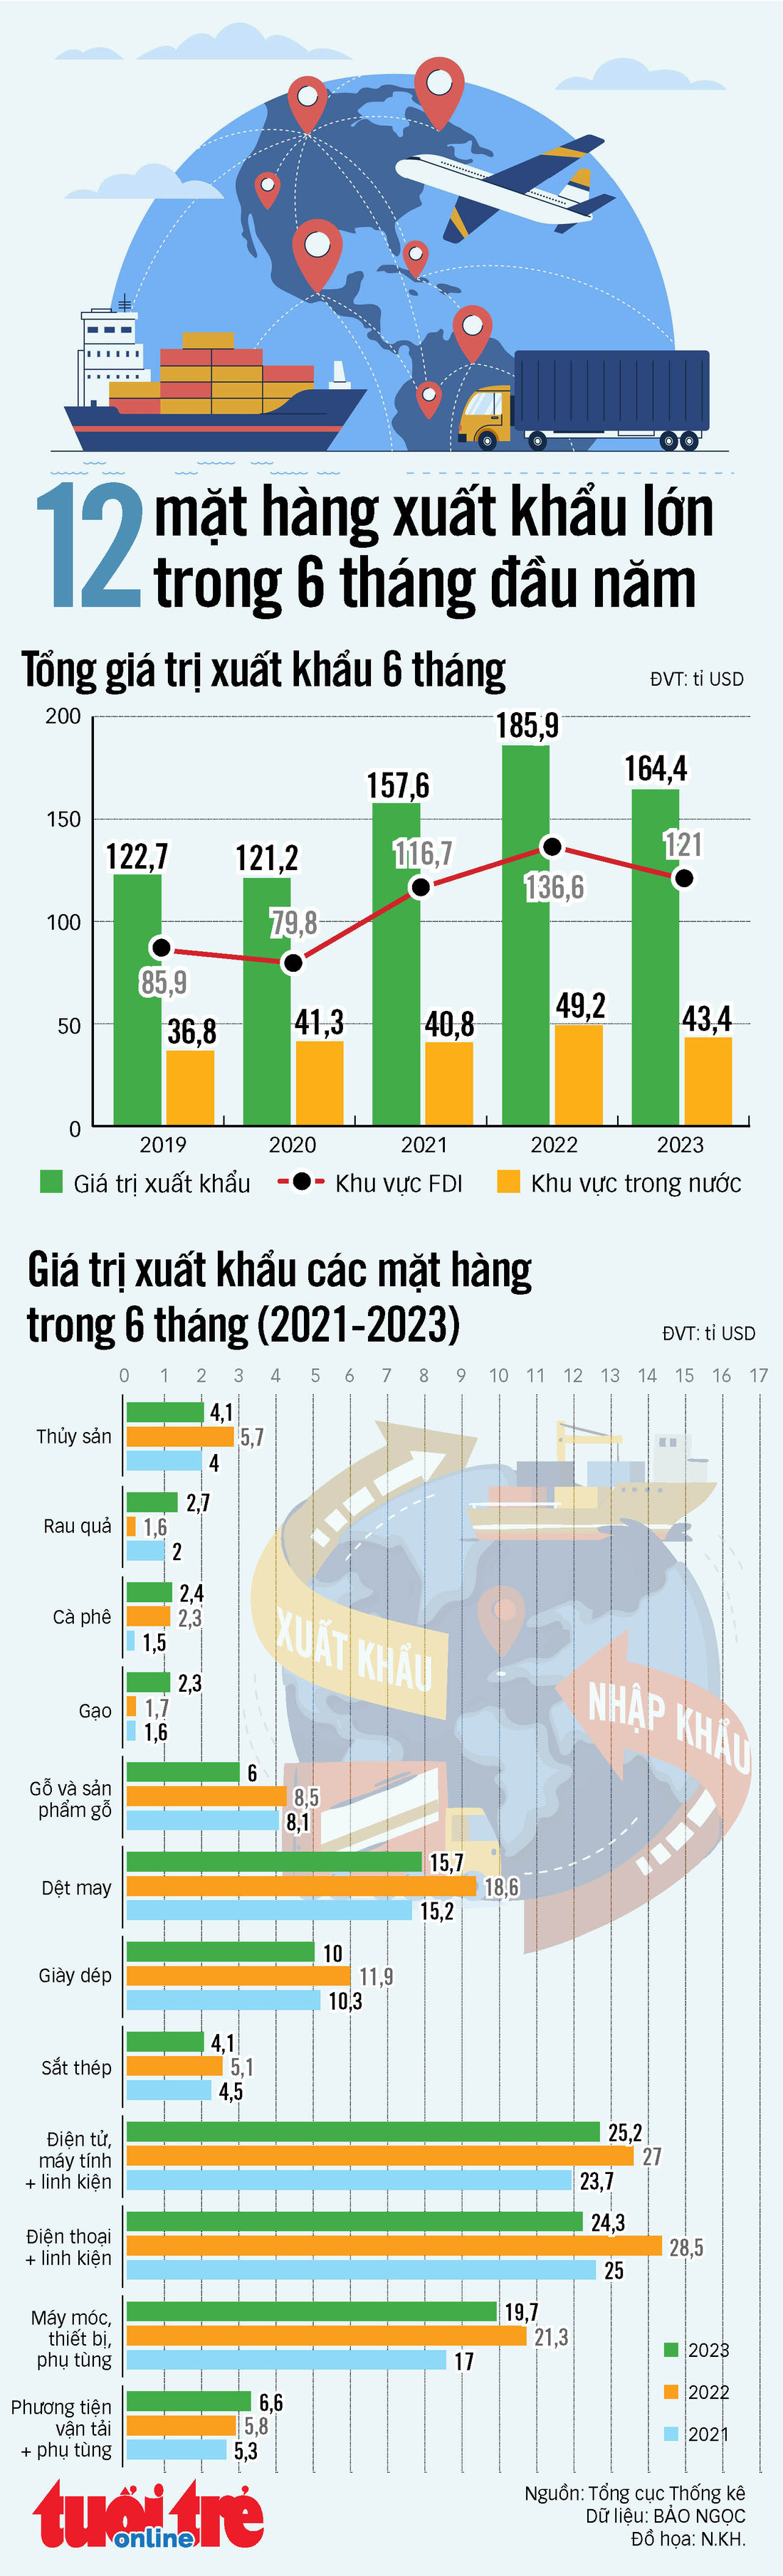 12 mặt hàng xuất khẩu lớn nhất của Việt Nam trong nửa đầu năm 2023 - Ảnh 1.